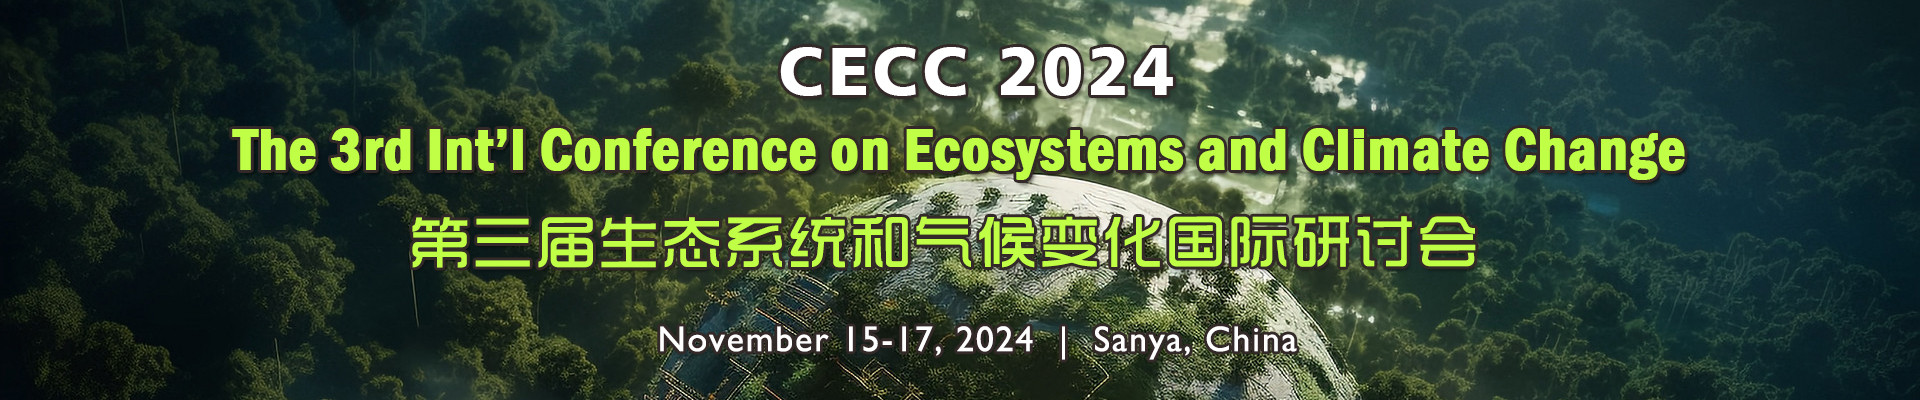 第三届生态系统和气候变化国际研讨会(CECC 2024) 